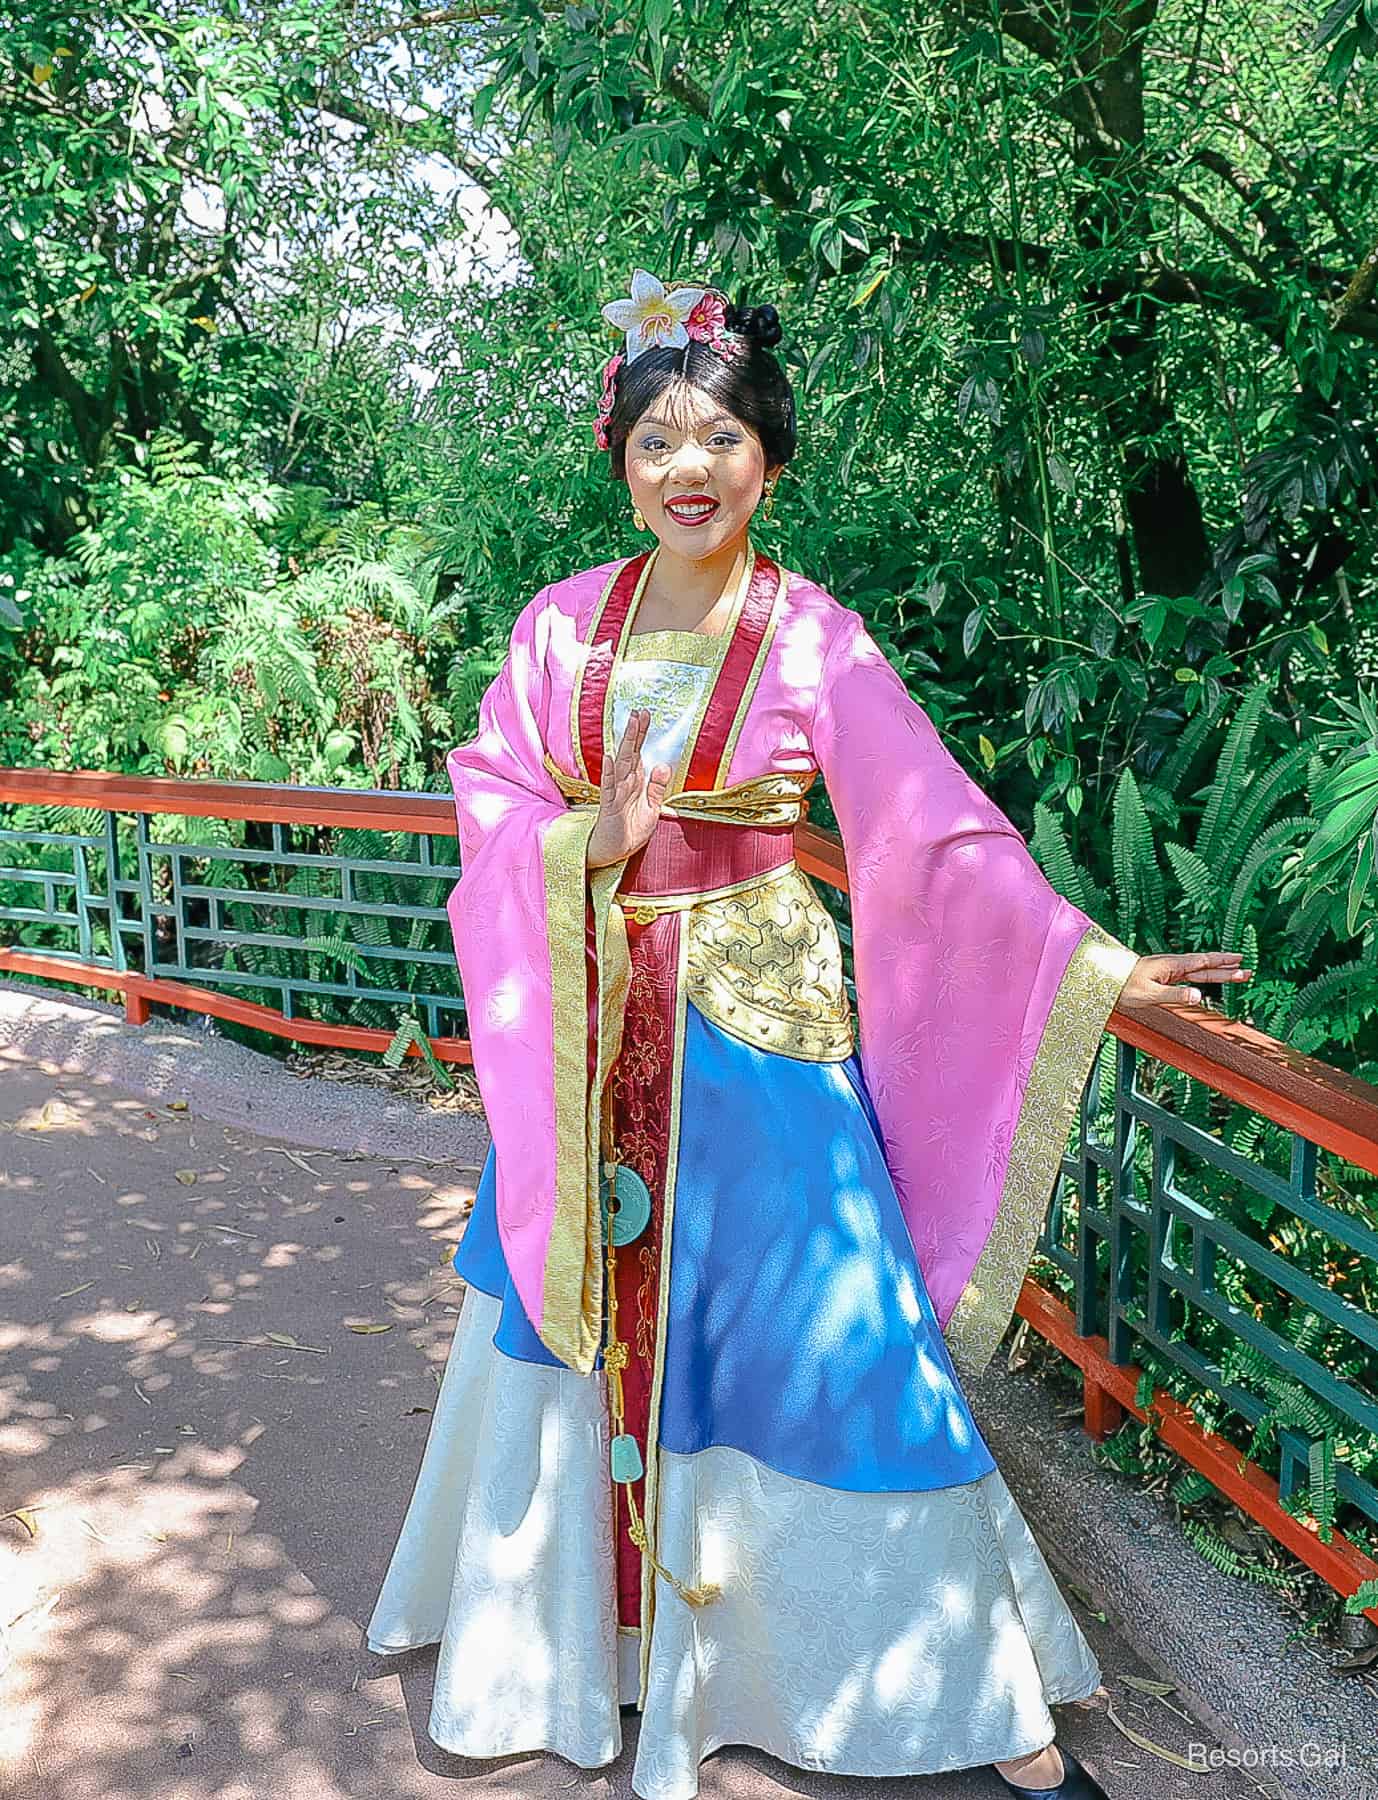 Mulan at Epcot wearing her traditional Hanfu dress 